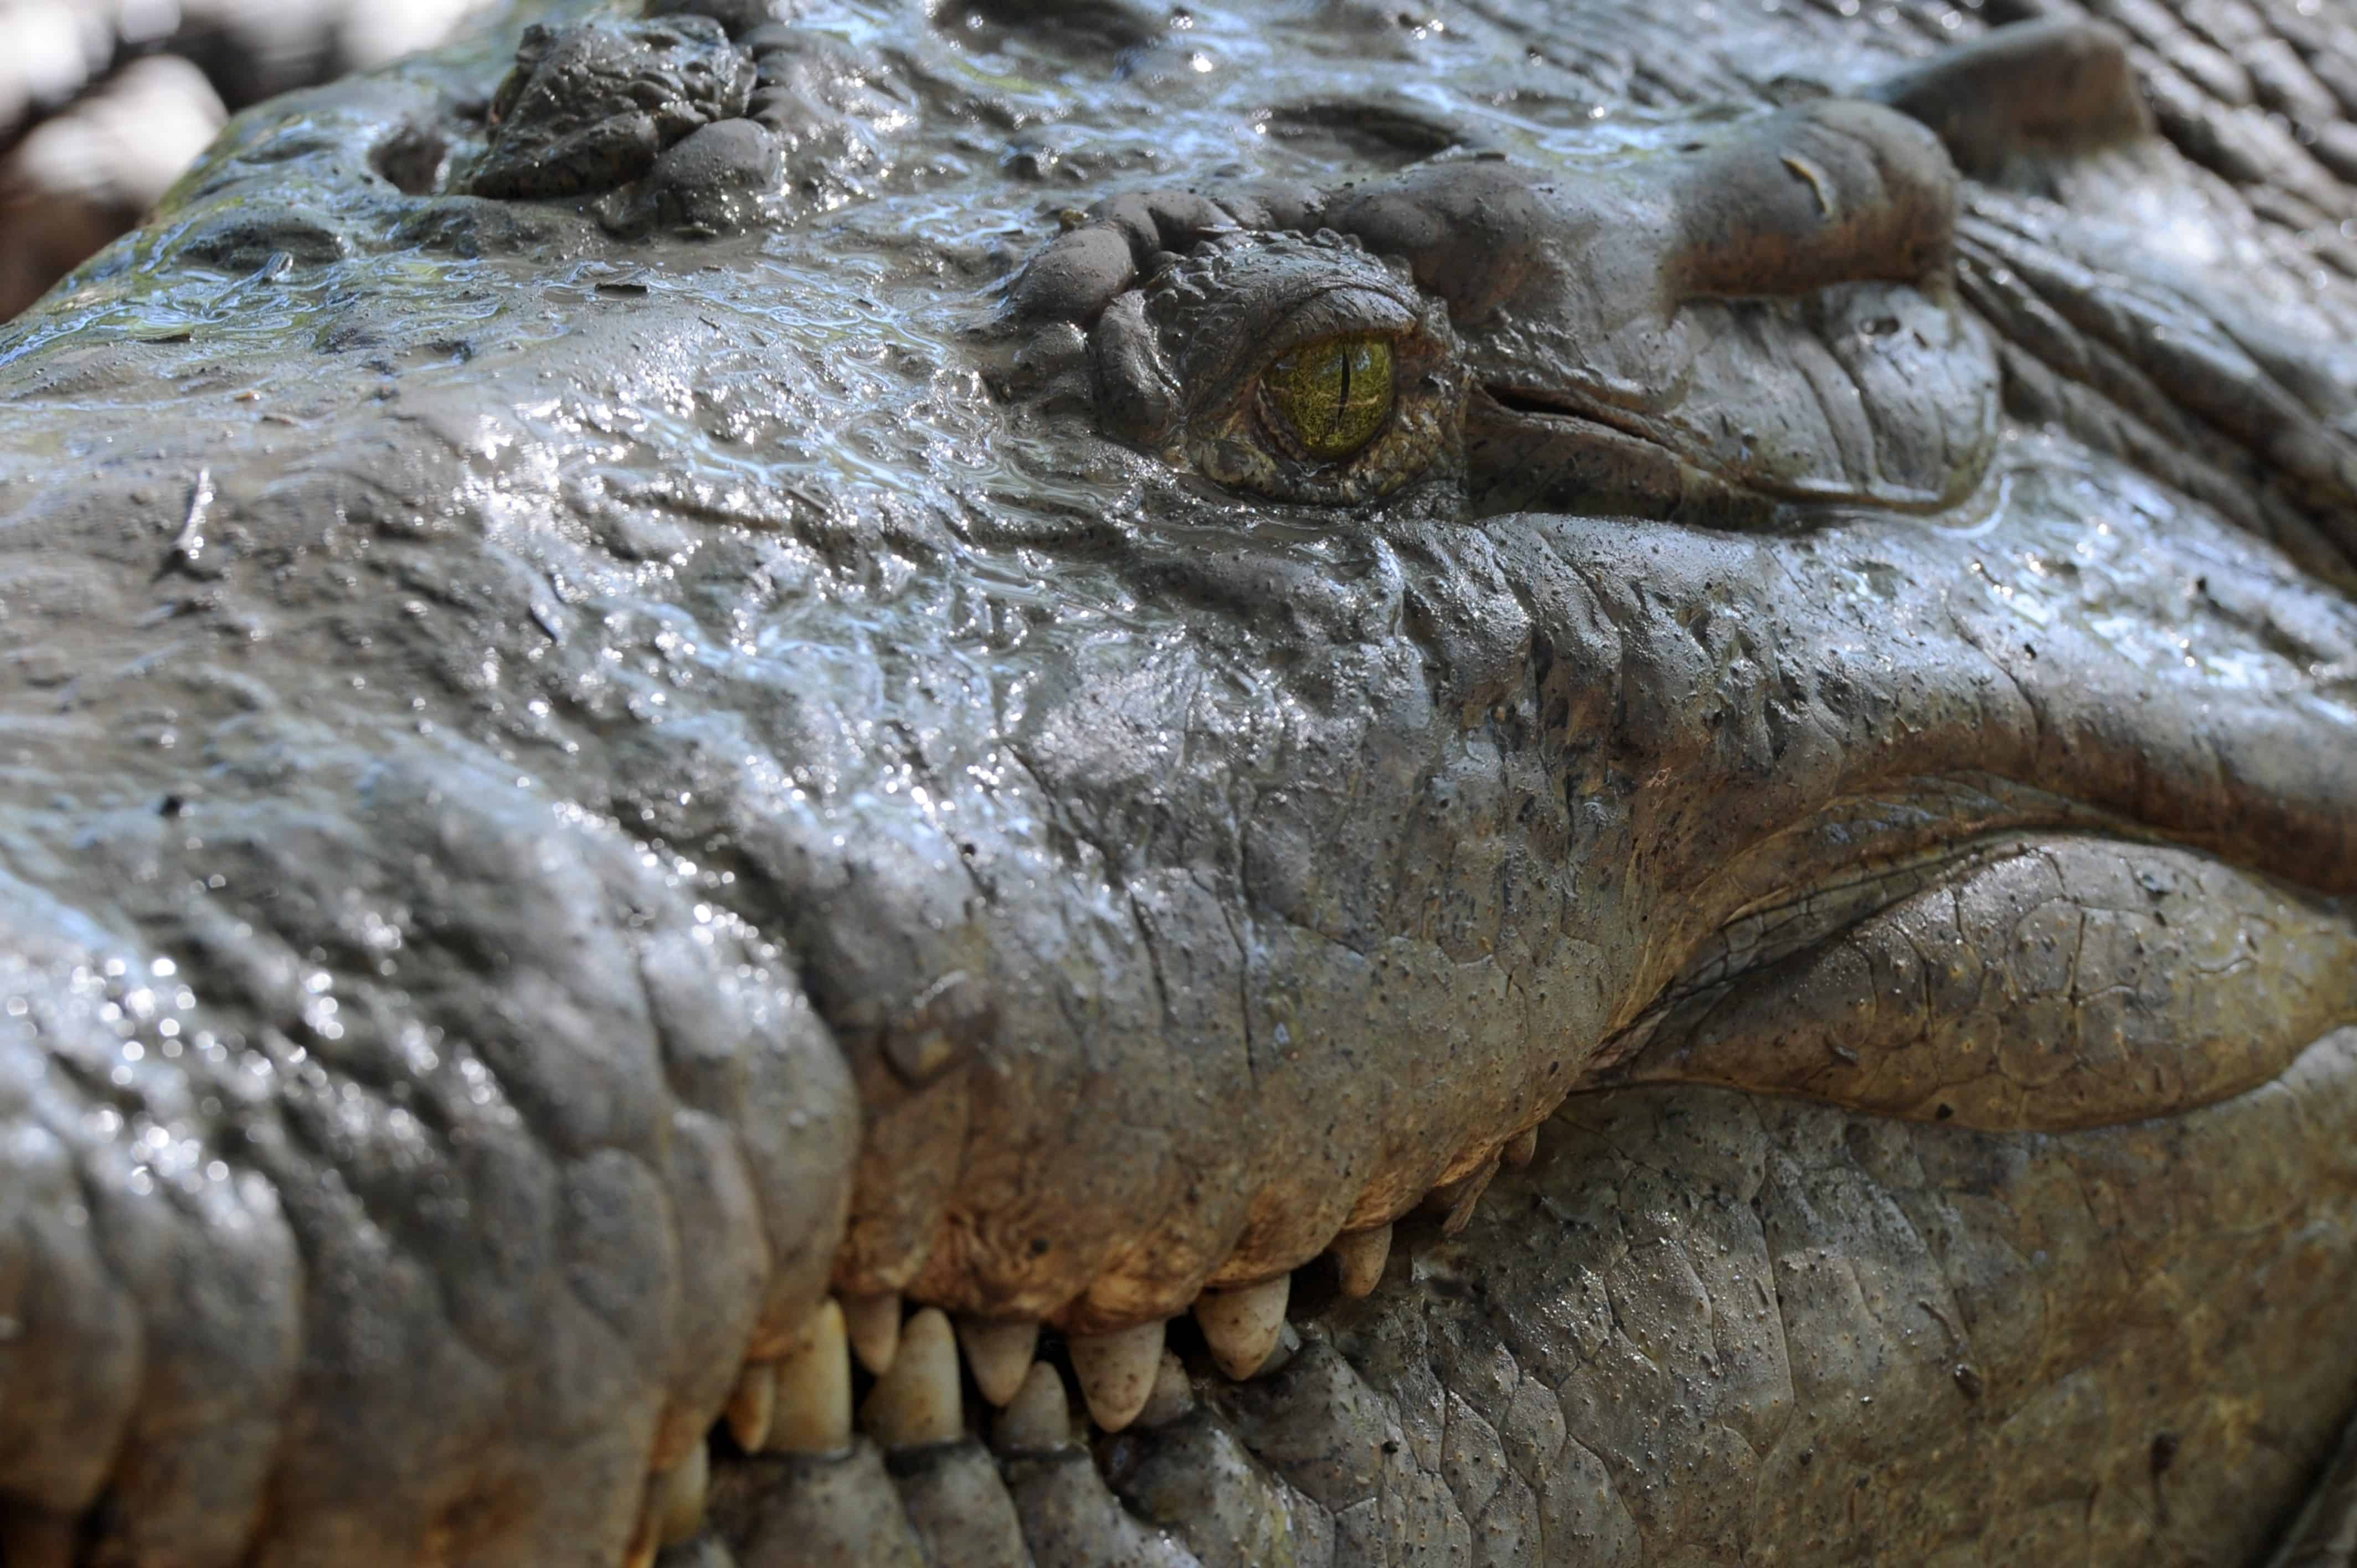 Costa Rica Crocodile Attack